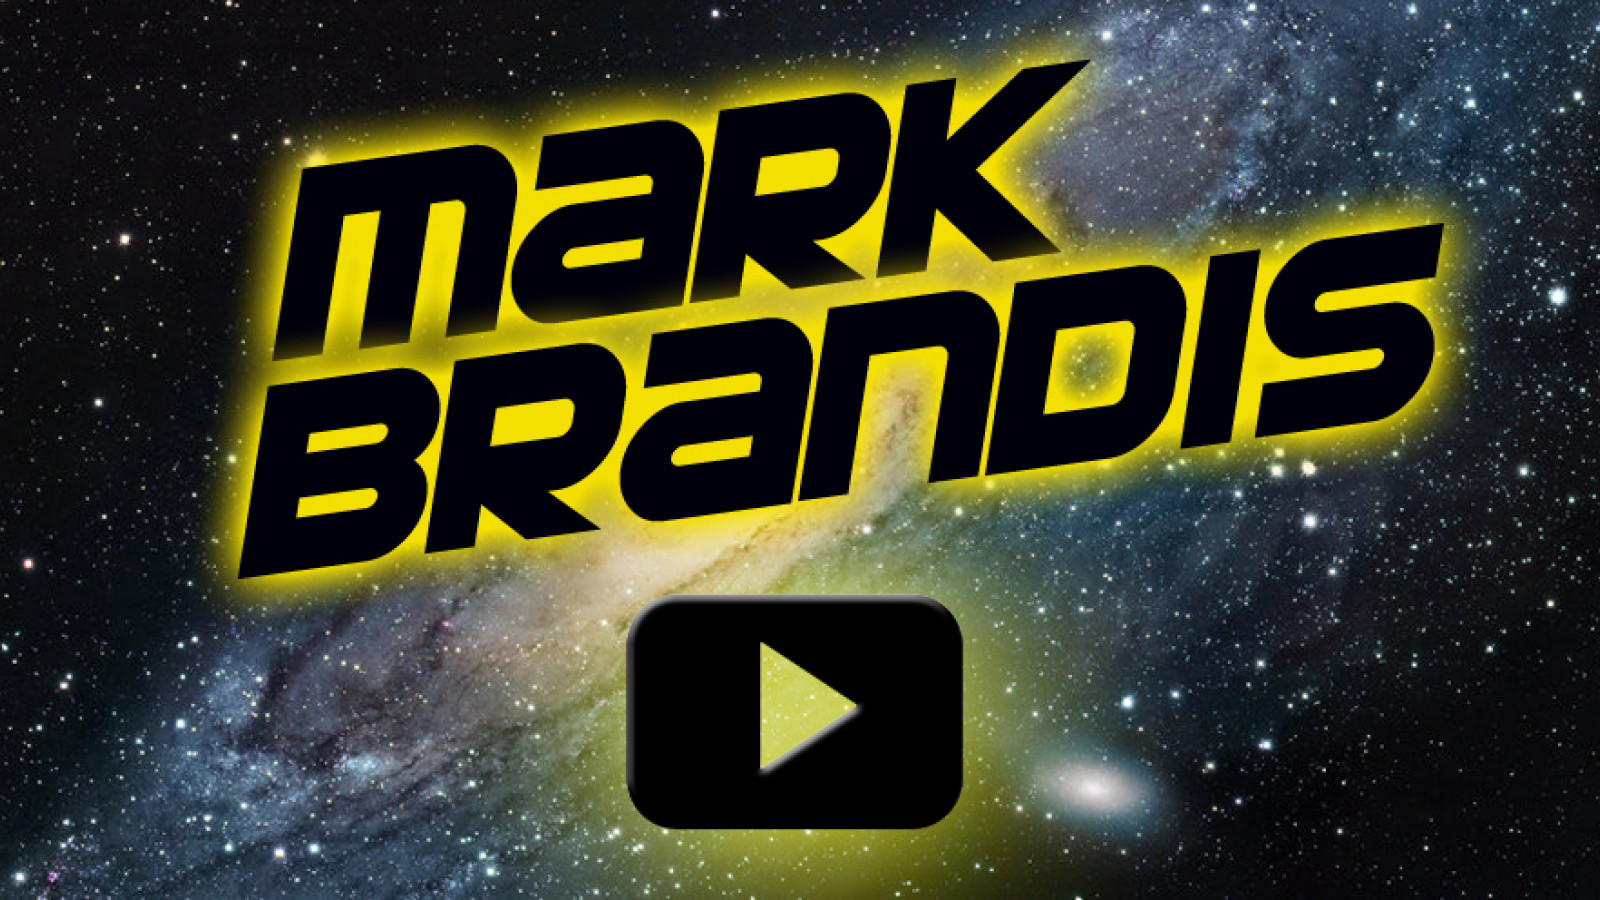 Mark Brandis Hörspiele jetzt auch im Stream